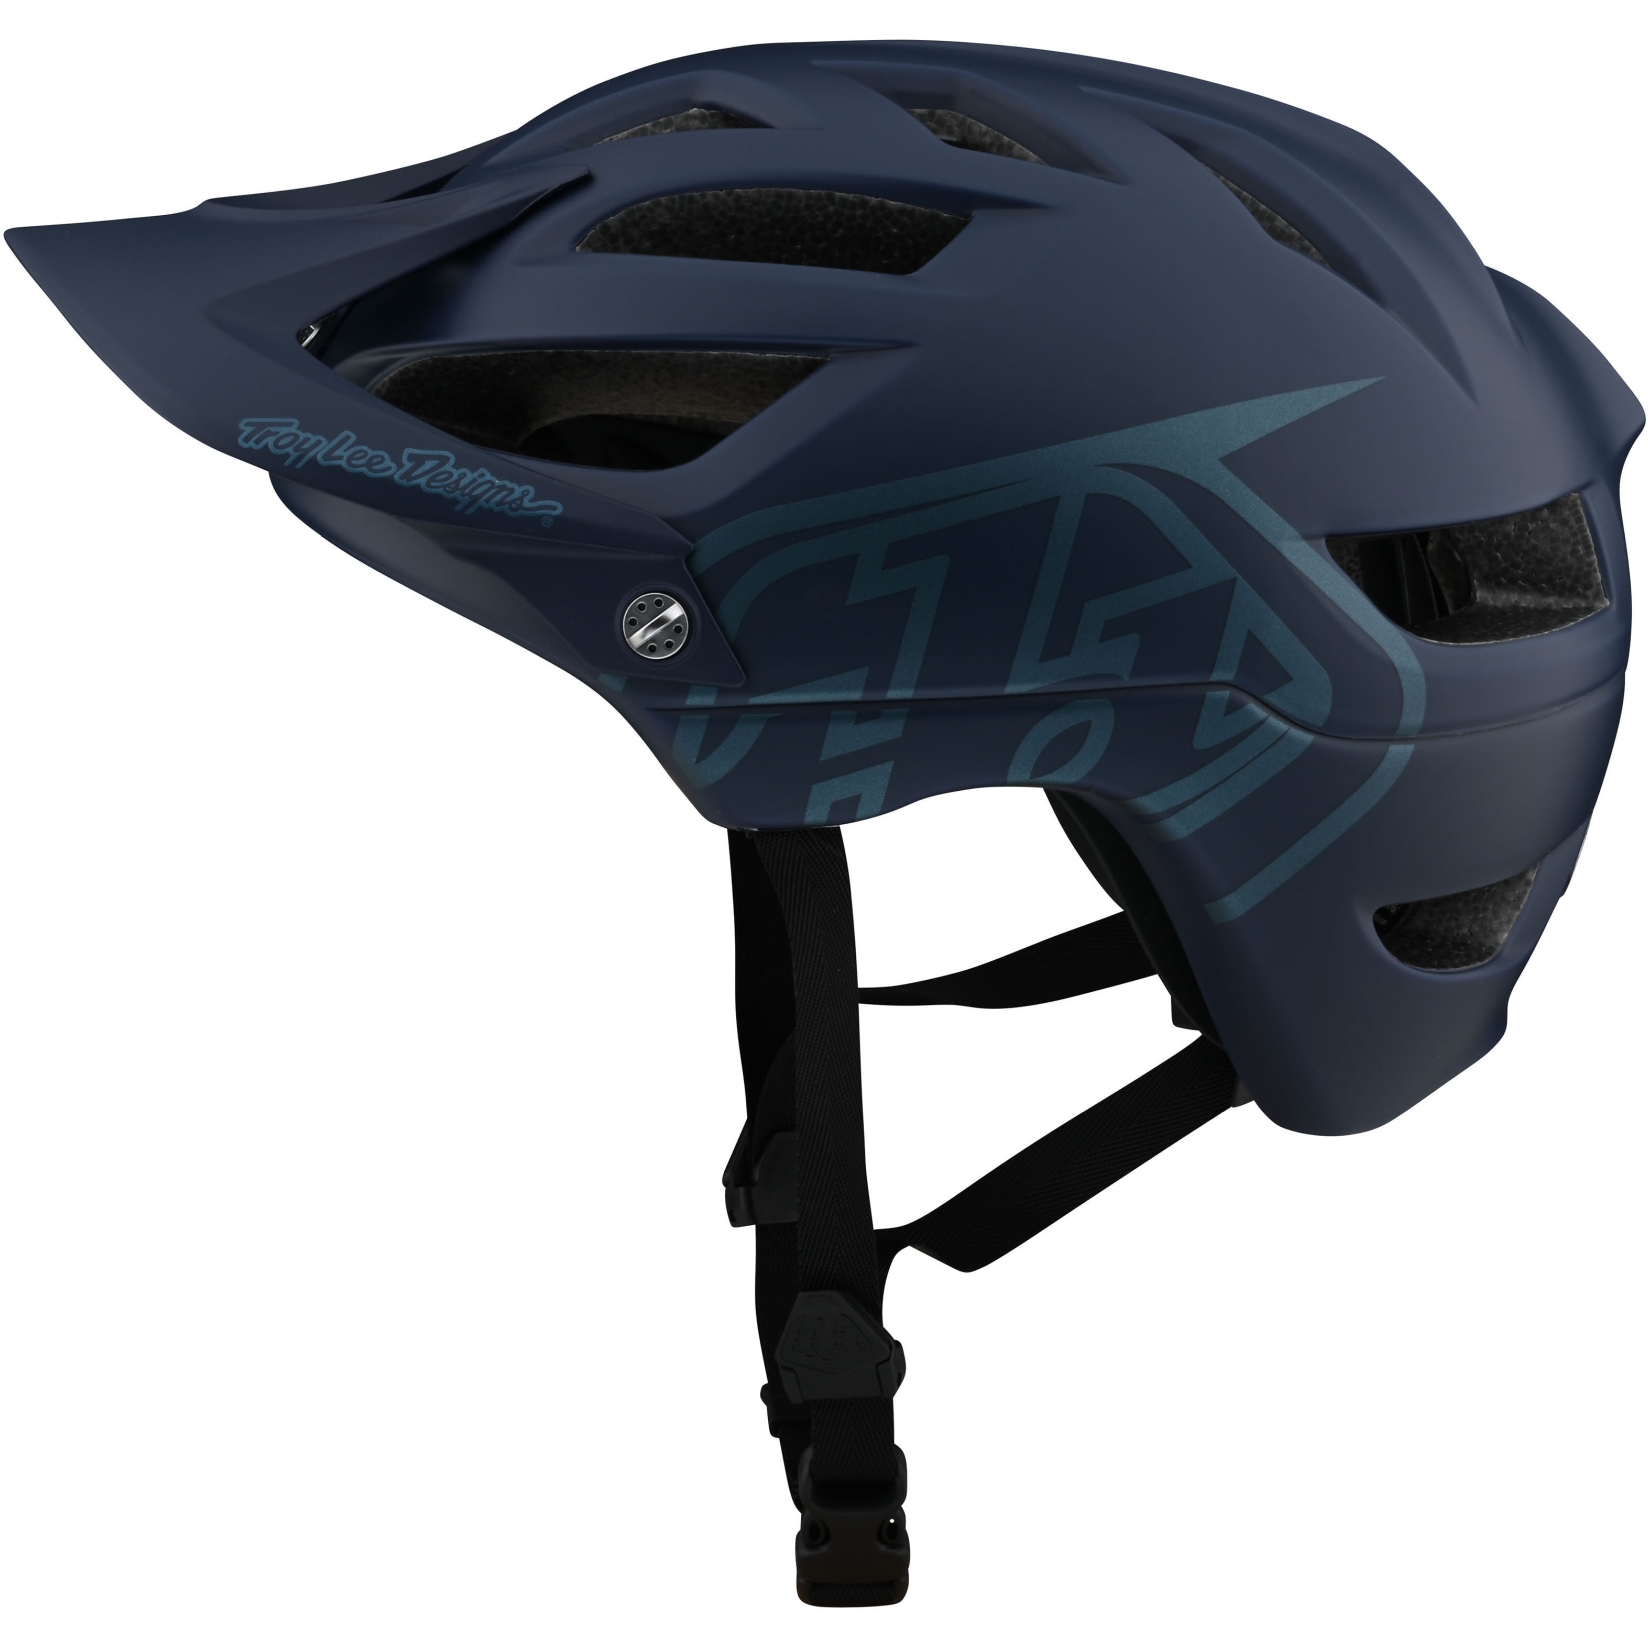 Produktbild von Troy Lee Designs A1 Drone Helm - dark slate blue